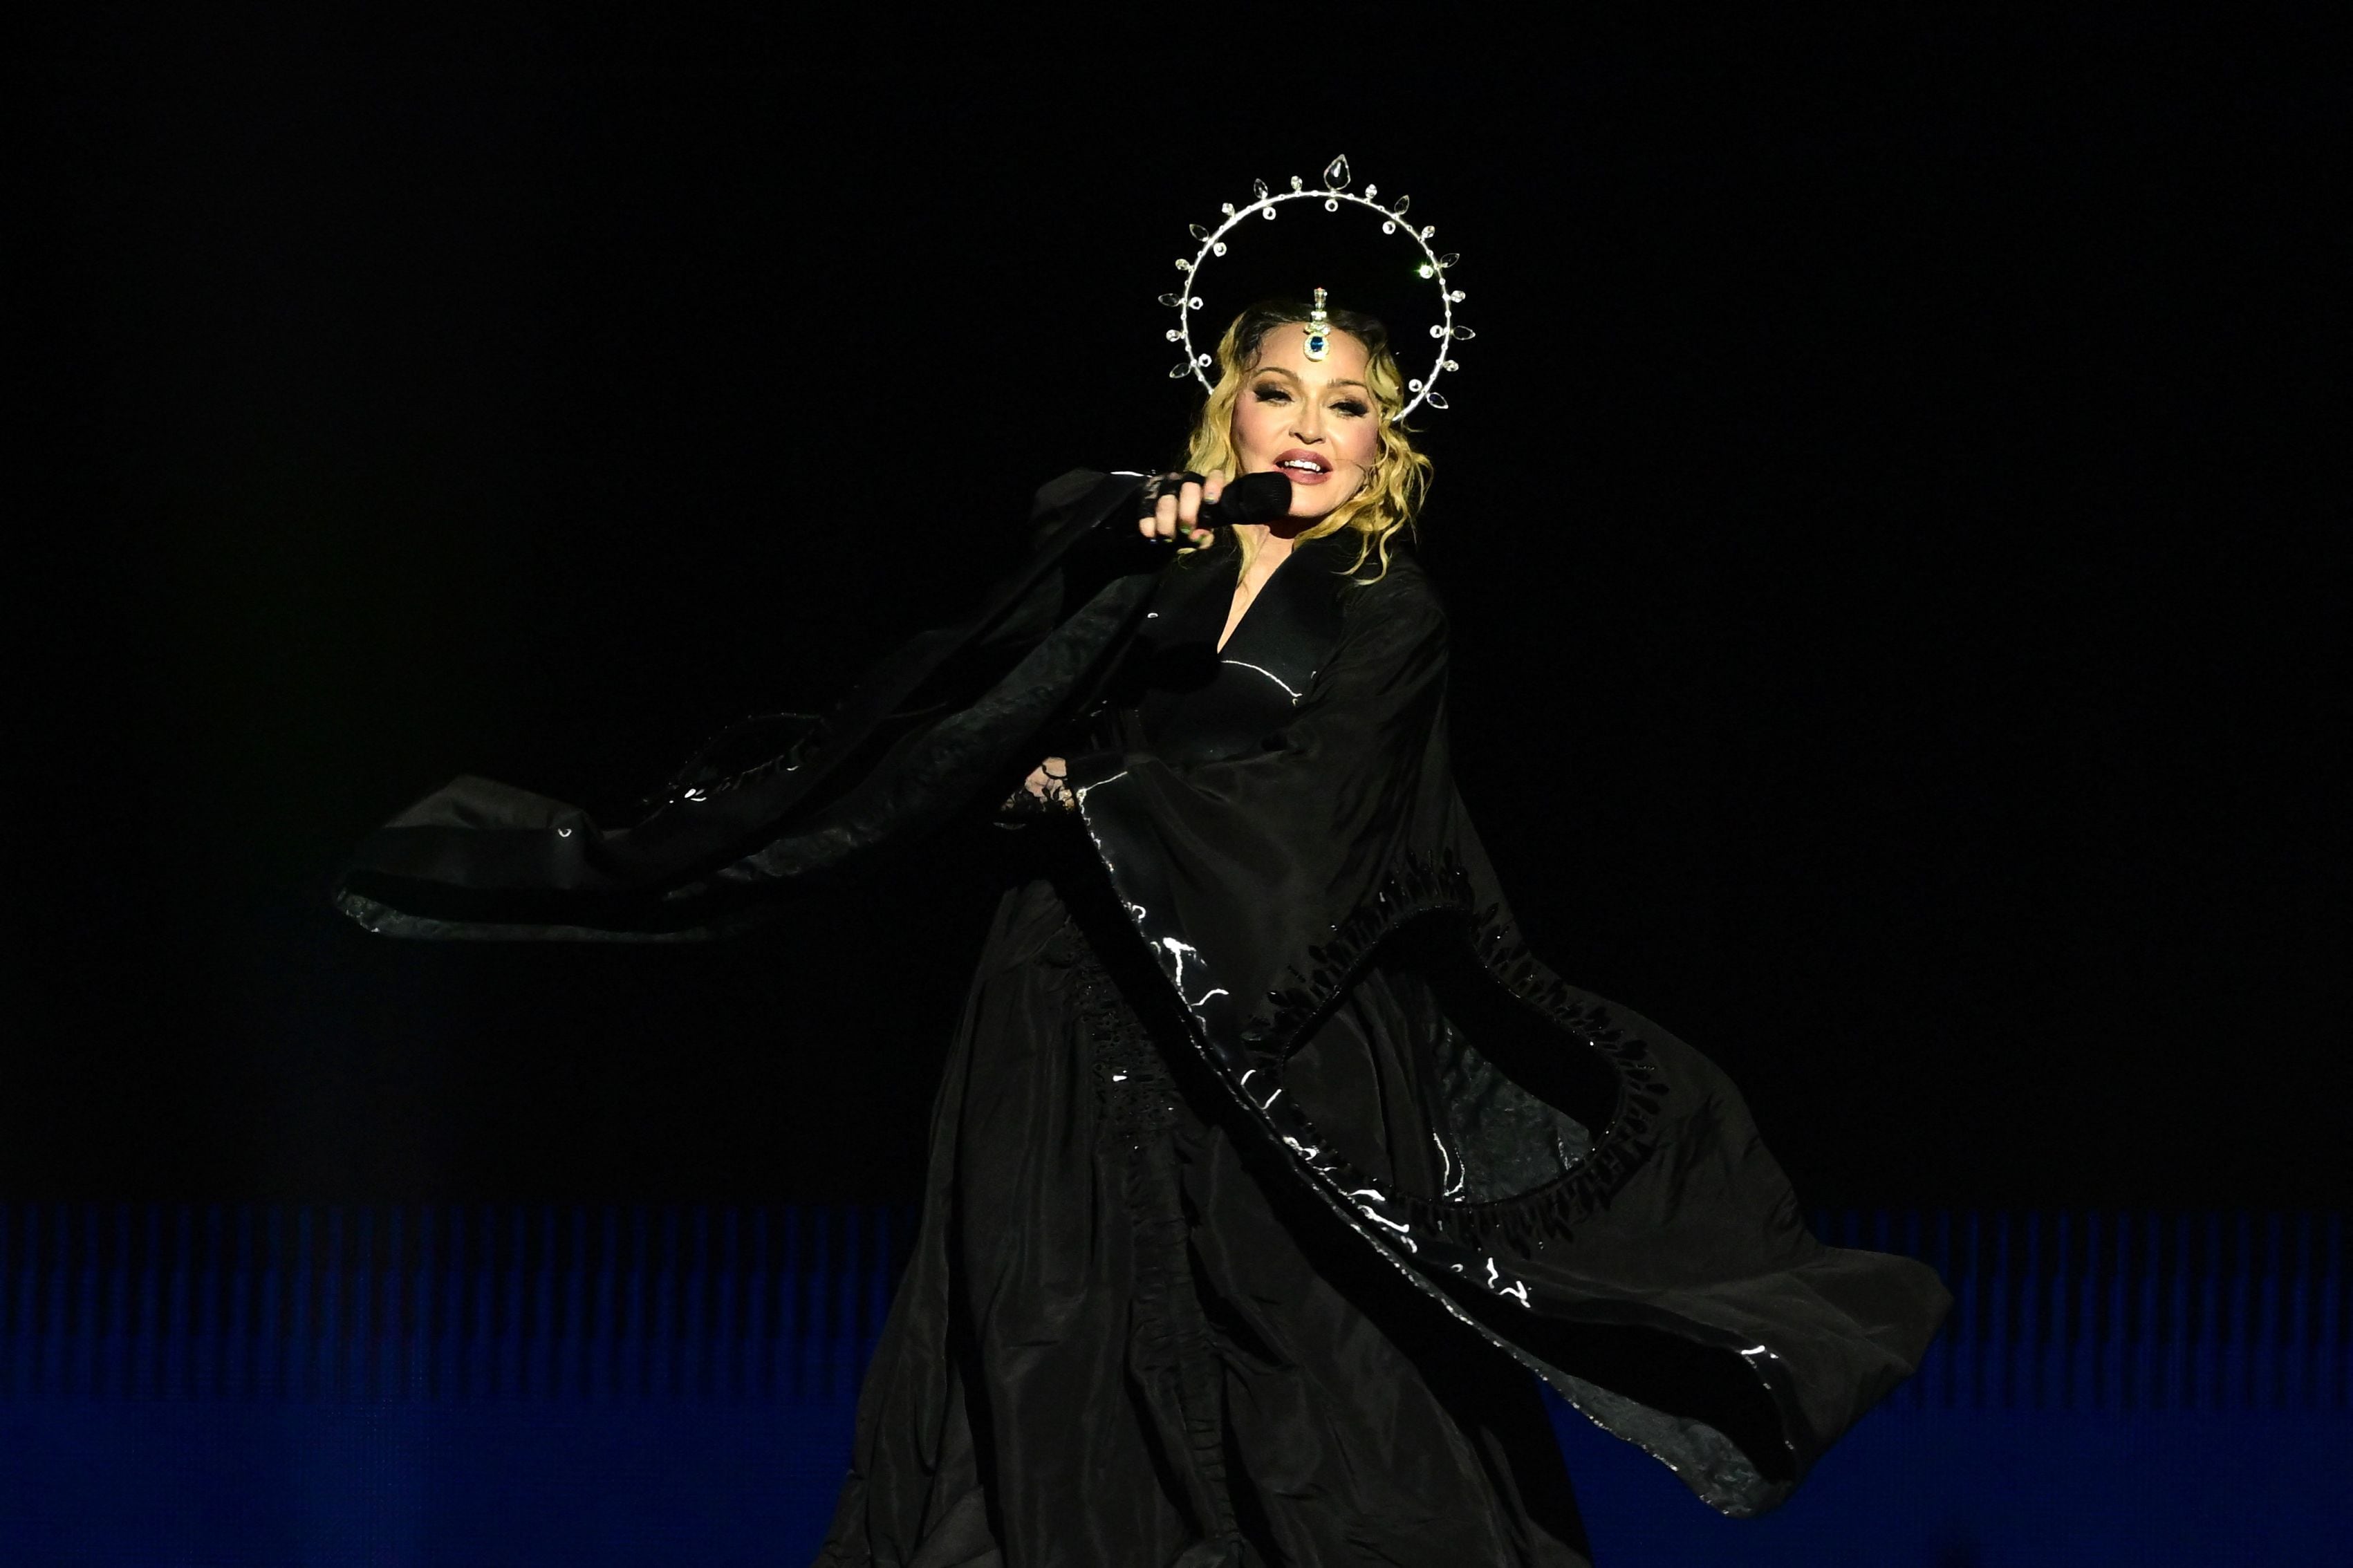 ¿Cuánto ganó Río con Madonna? Concierto aportó $ 60 millones a la economía local, dice la Alcaldía de Río de Janeiro